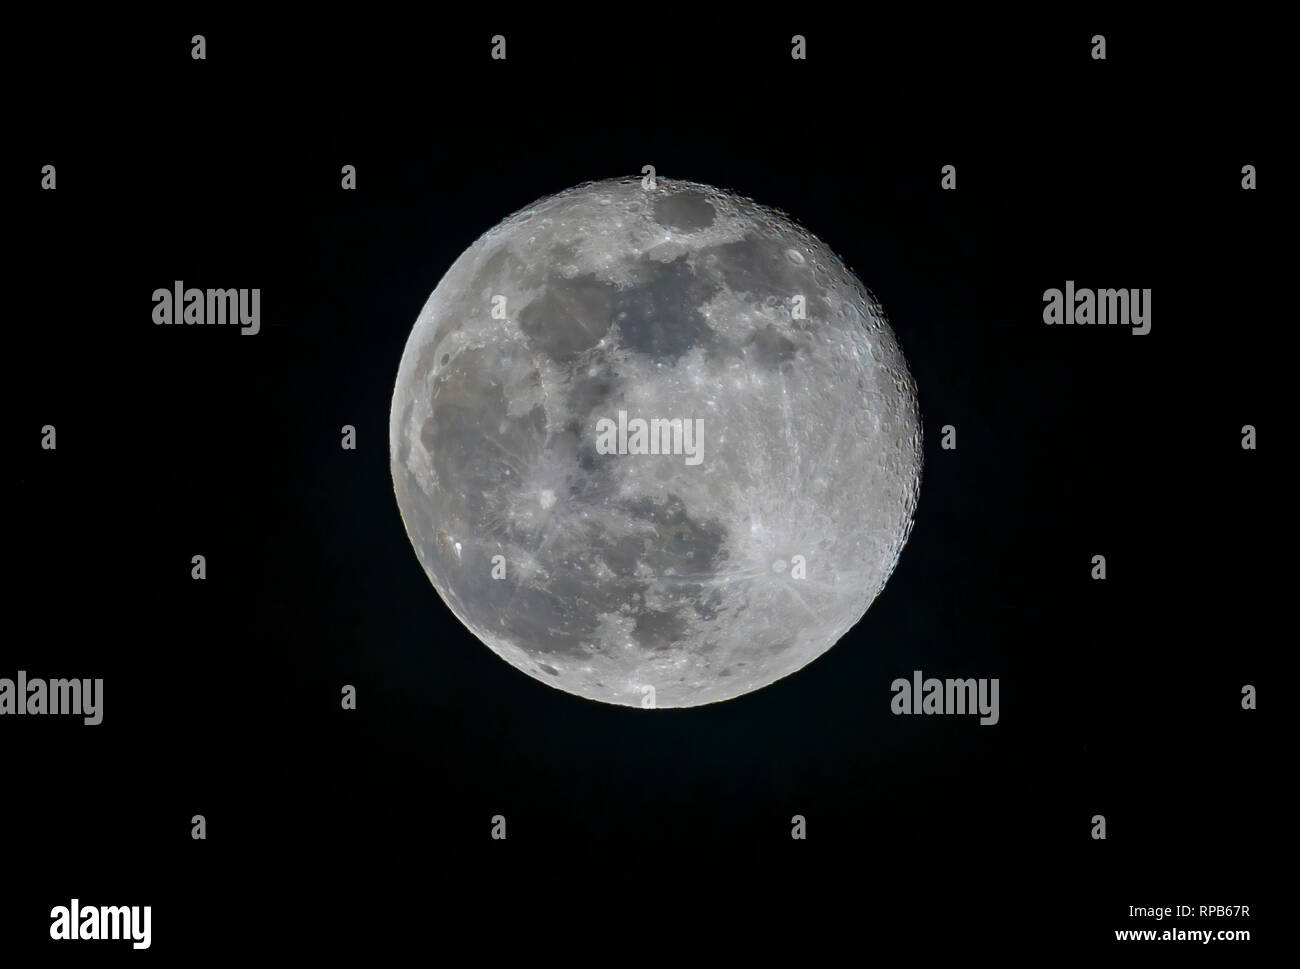 Himmelskörper im Himmel: Abnehmender Mond gibbous (einen Tag nach Vollmond) in den Nachthimmel von Surrey gesehen, South East England, Großbritannien Stockfoto